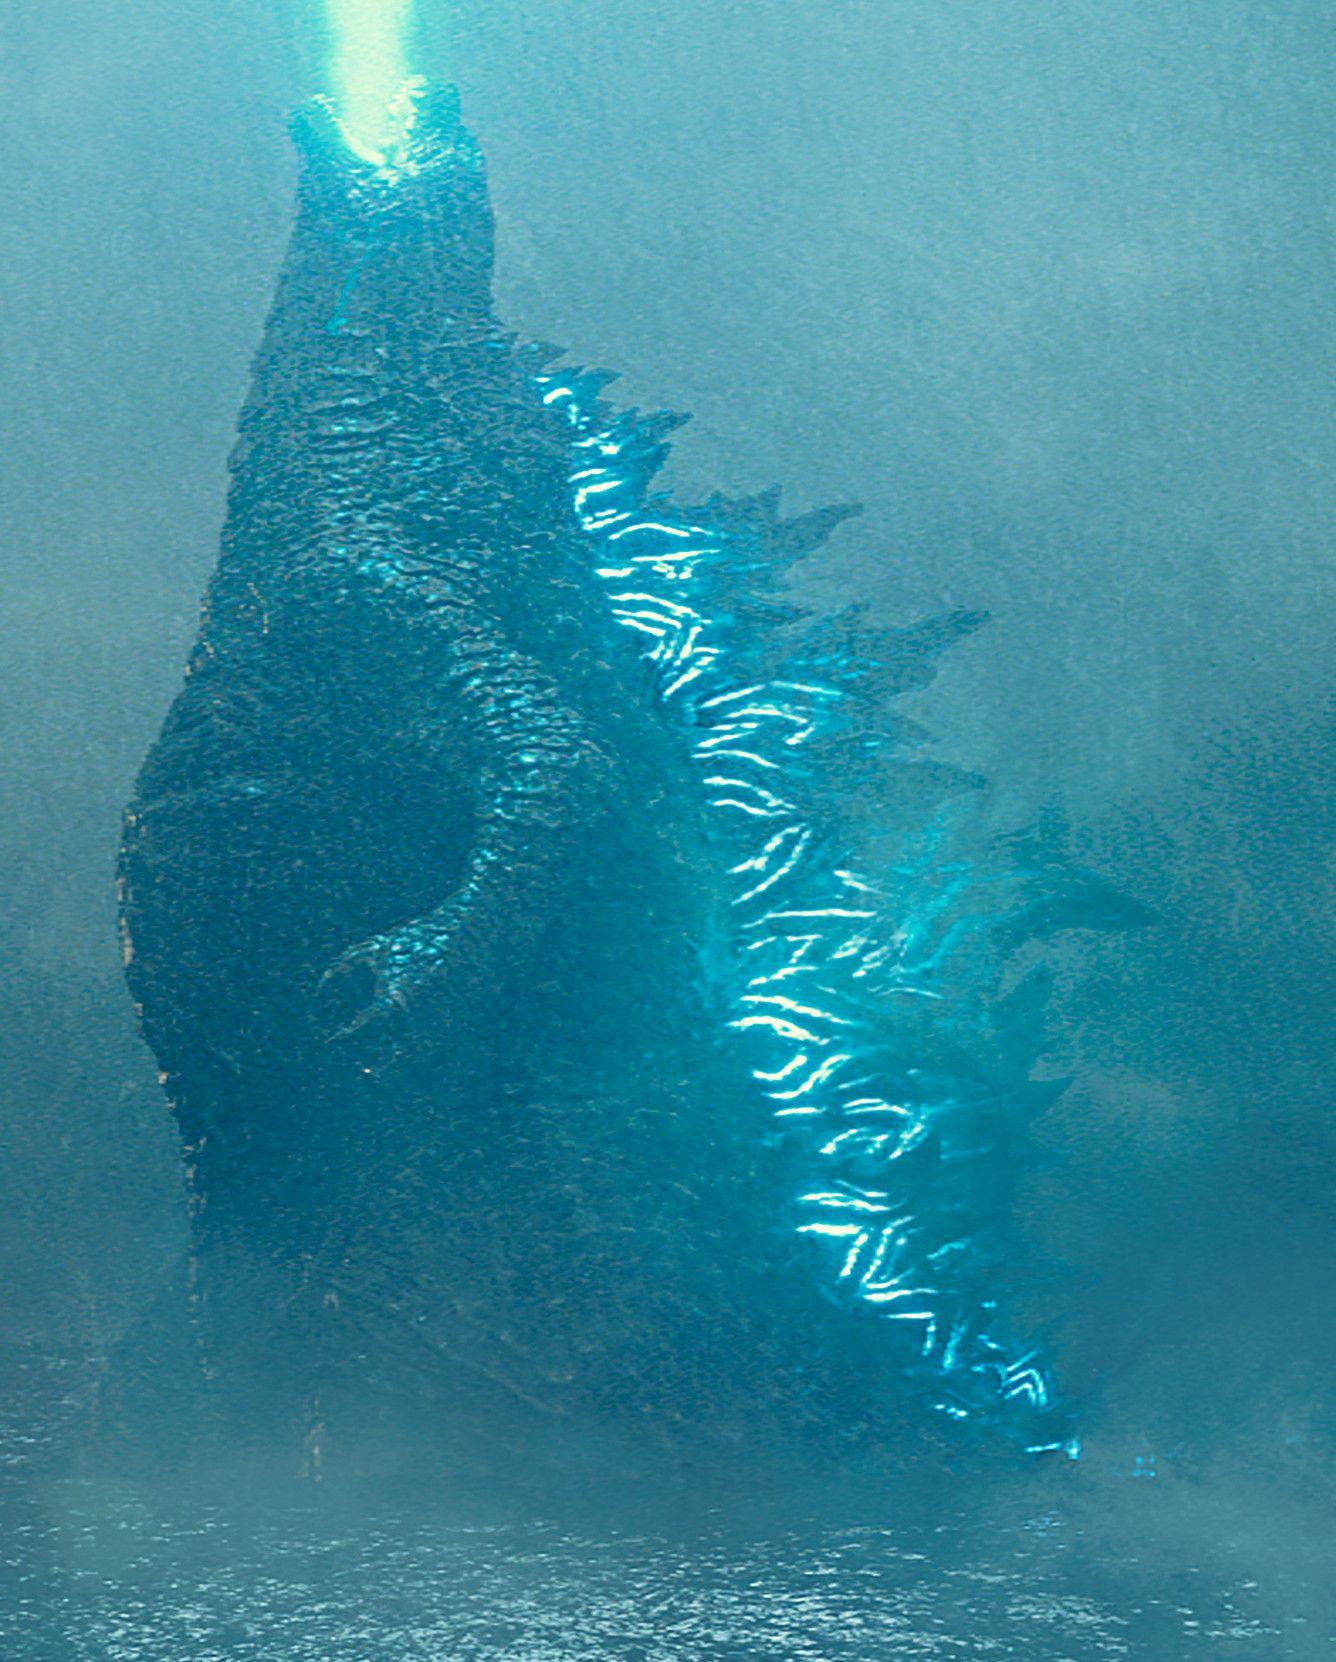 Godzilla 2019 Wallpapers Top Free Godzilla 2019